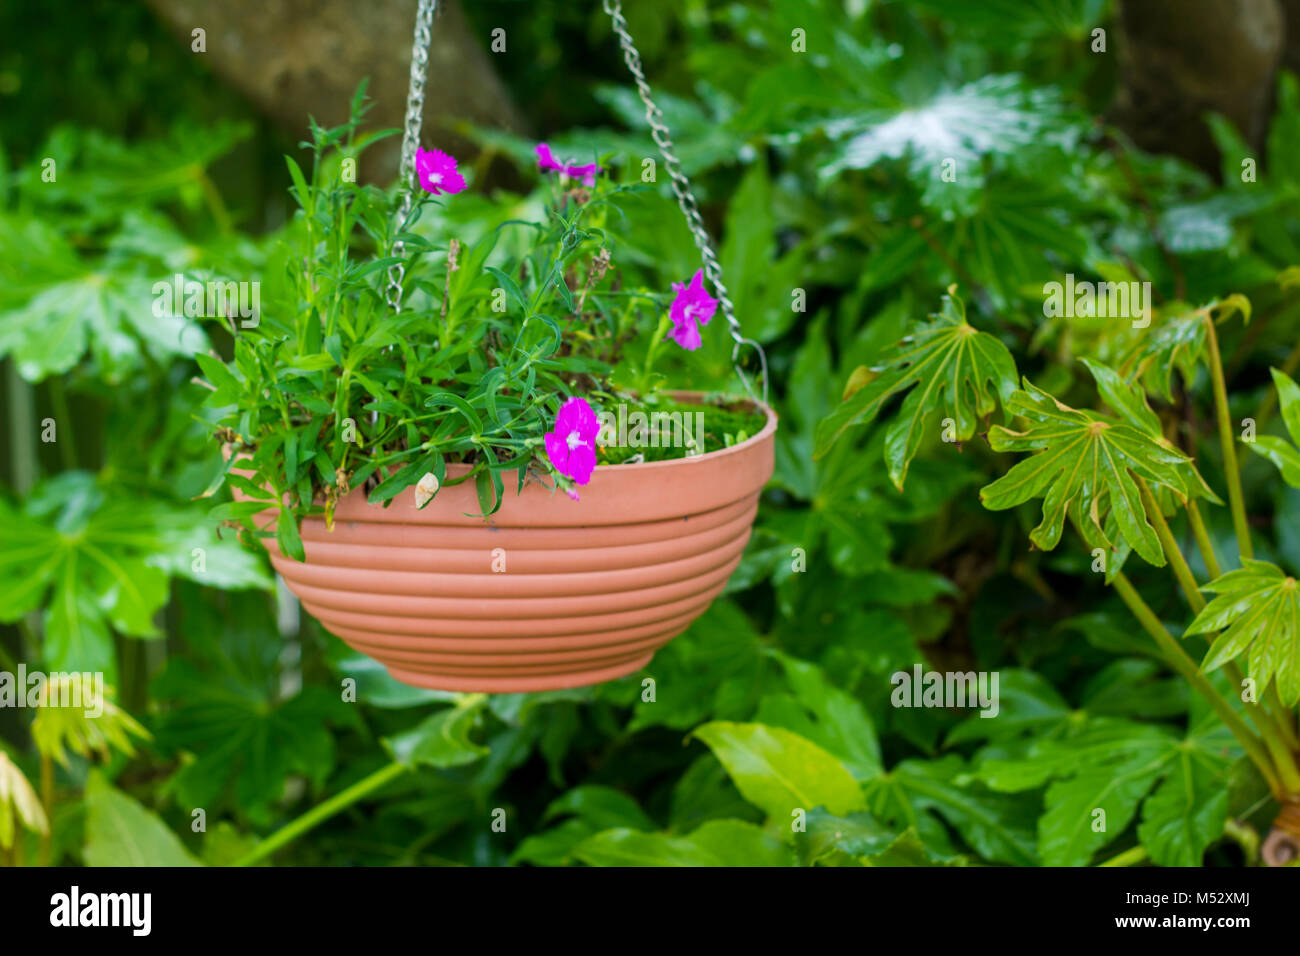 Hanging flower basket Stock Photo